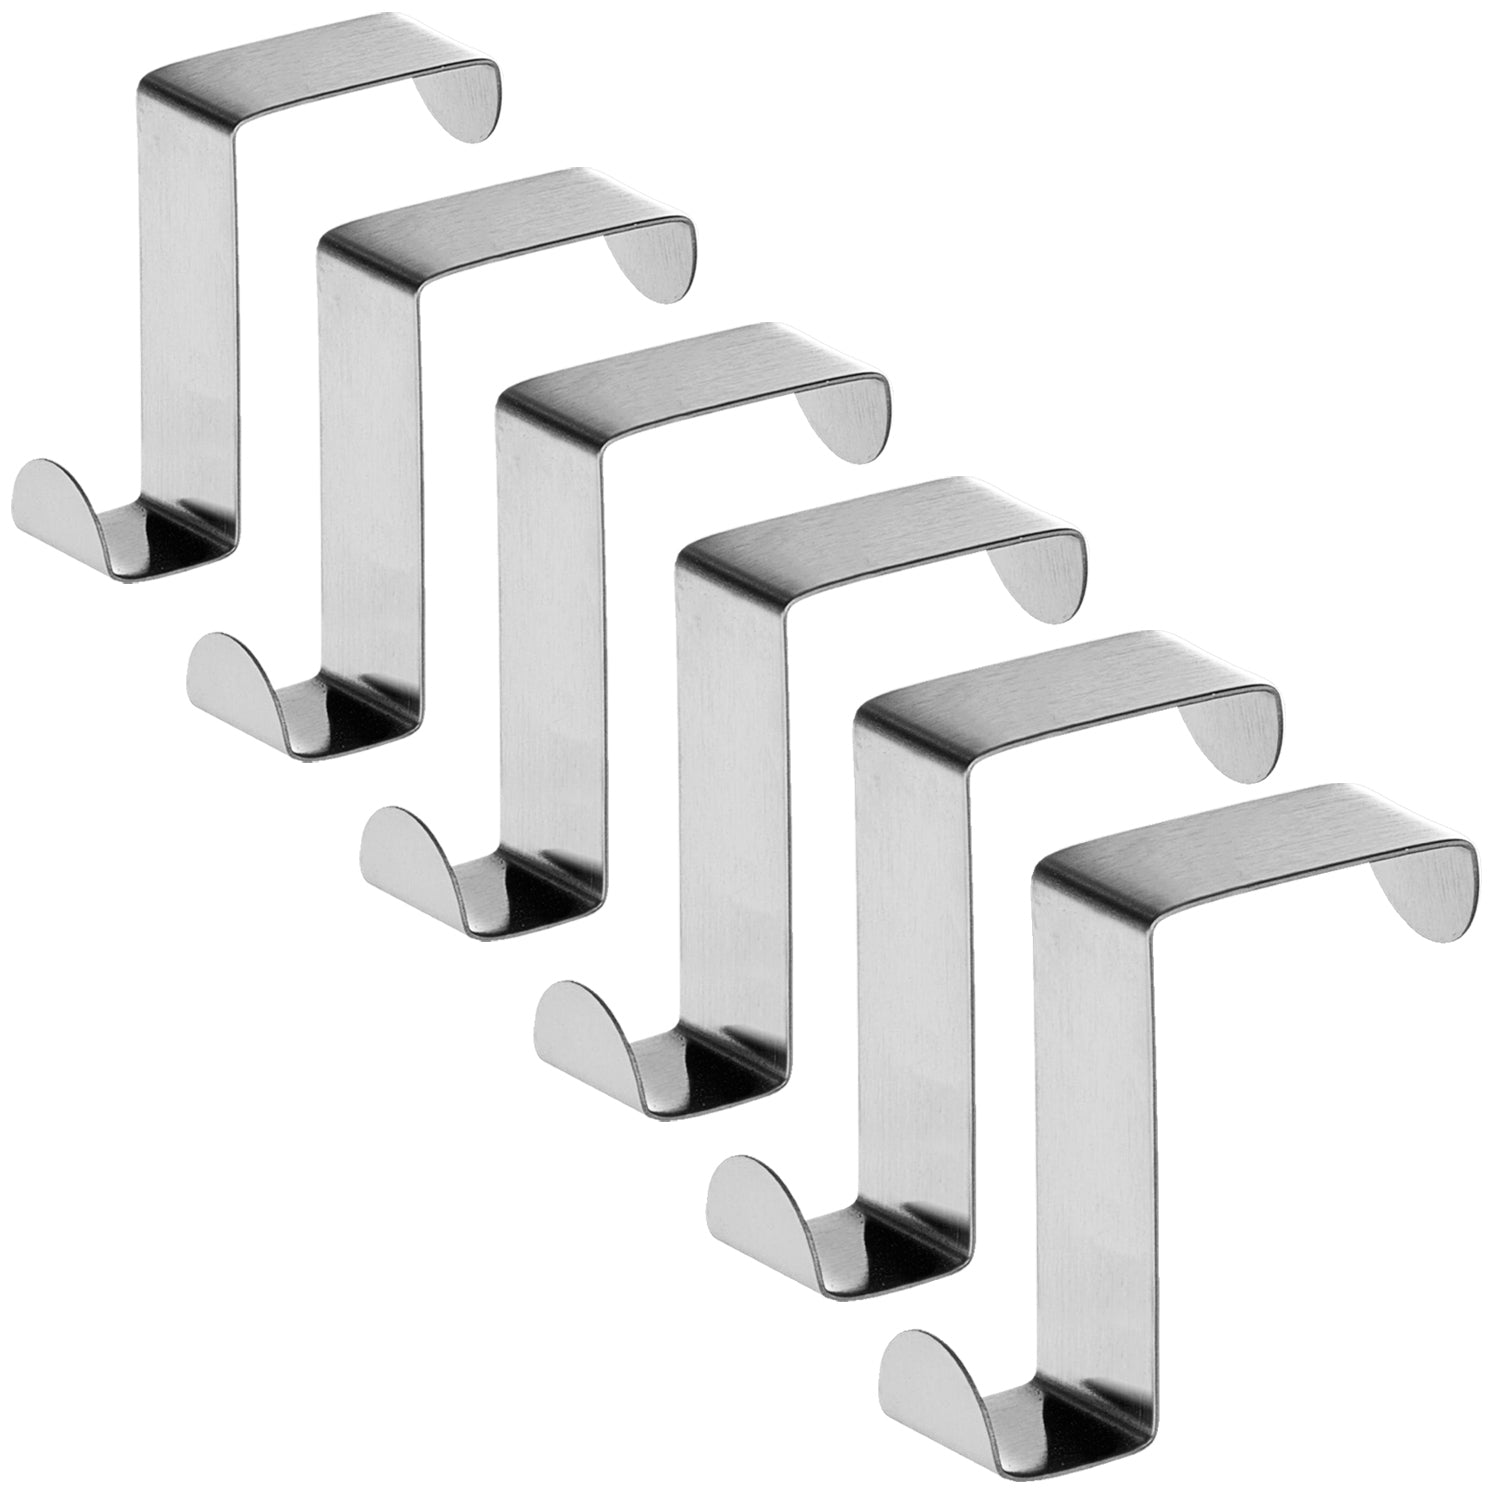 6 Stainless Steel Door Hooks,Reversible for Standard Door and Wardrobe, Tatkraft Seger